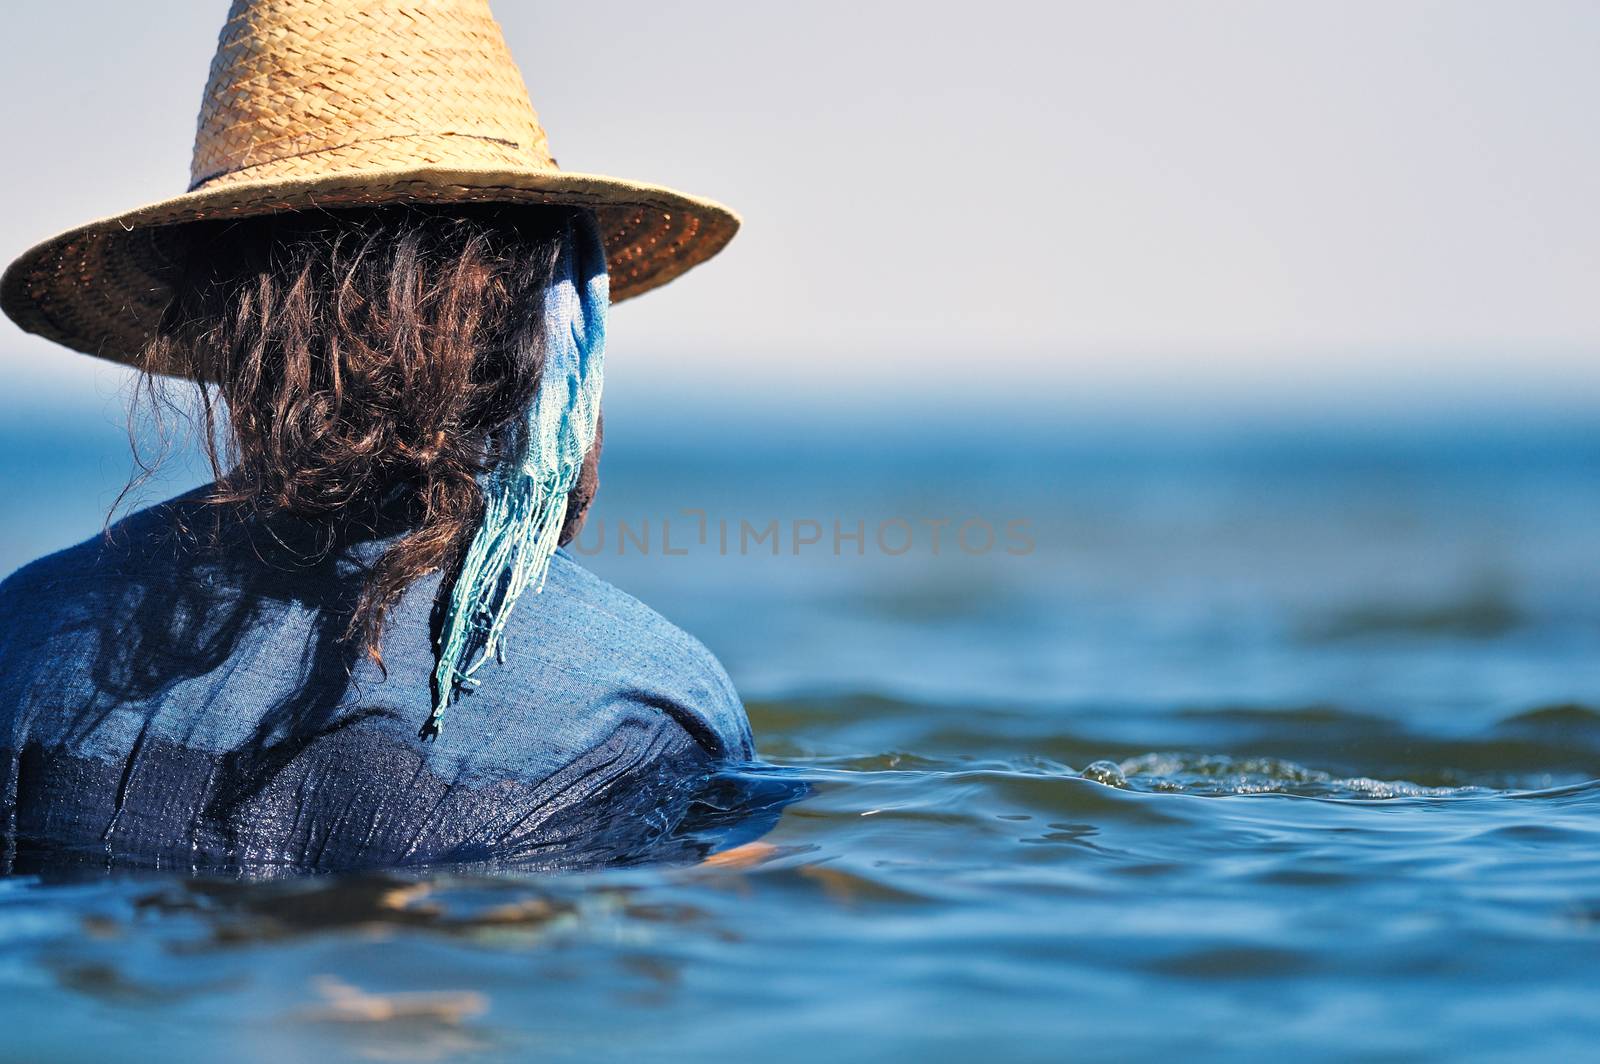 Swimming in seawater. Woman in wet dress